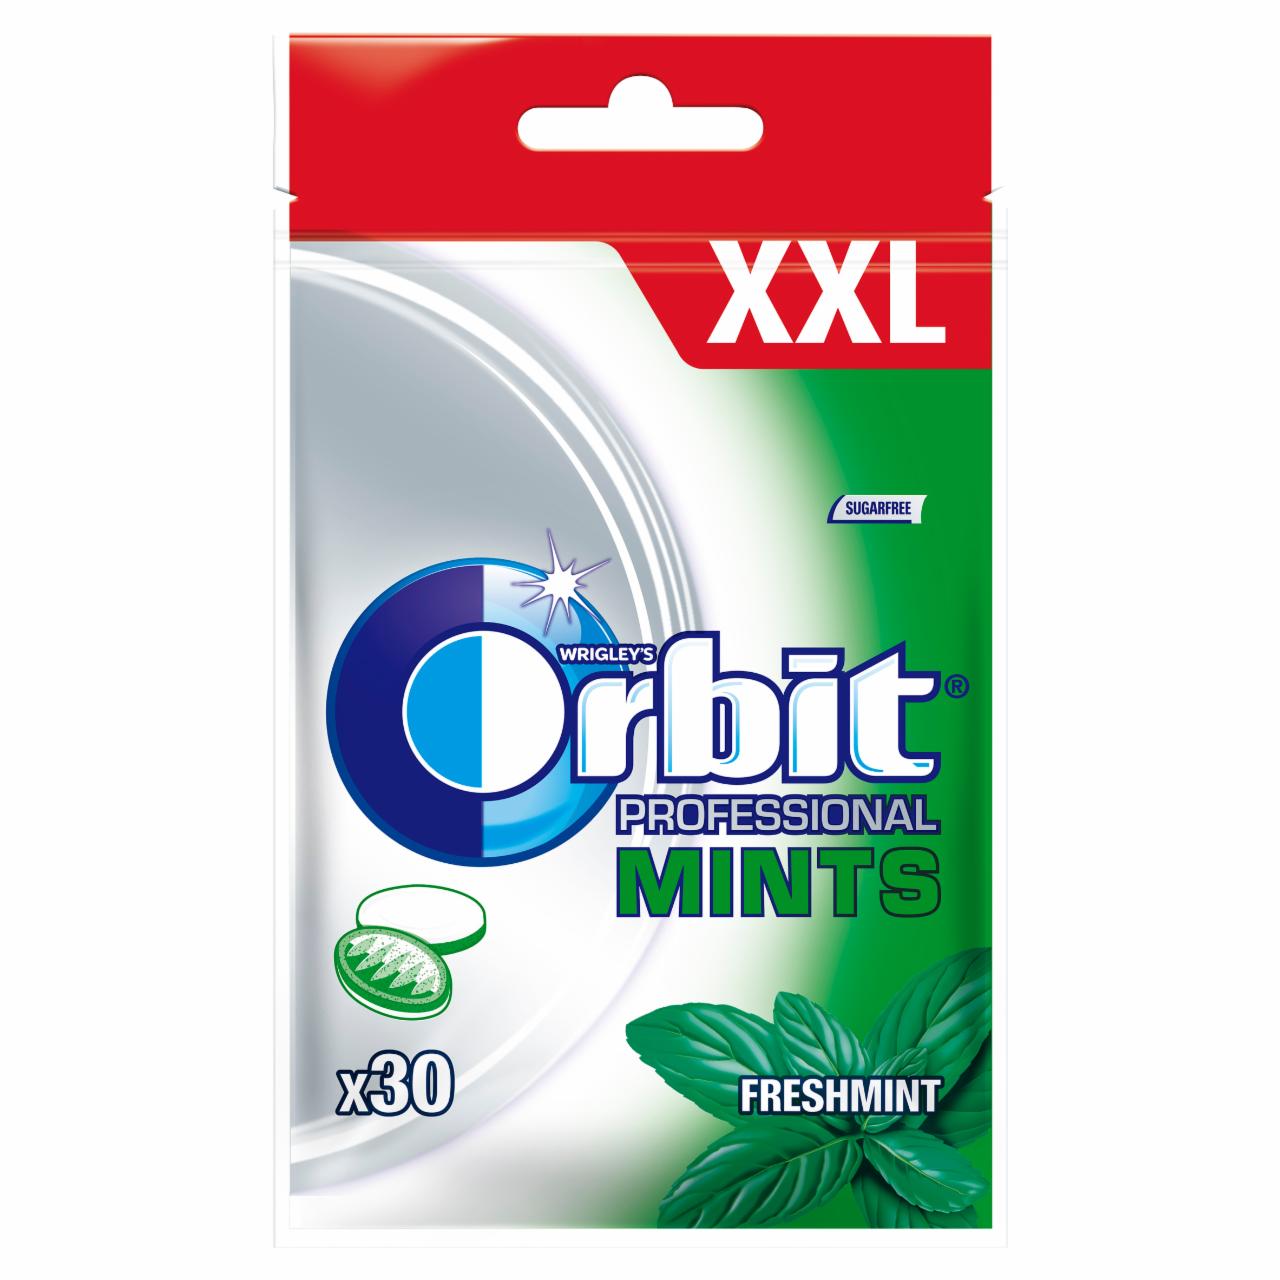 Zdjęcia - Orbit Professional Mints Freshmint XXL Miętusy bez cukru 30 g (30 miętusów)